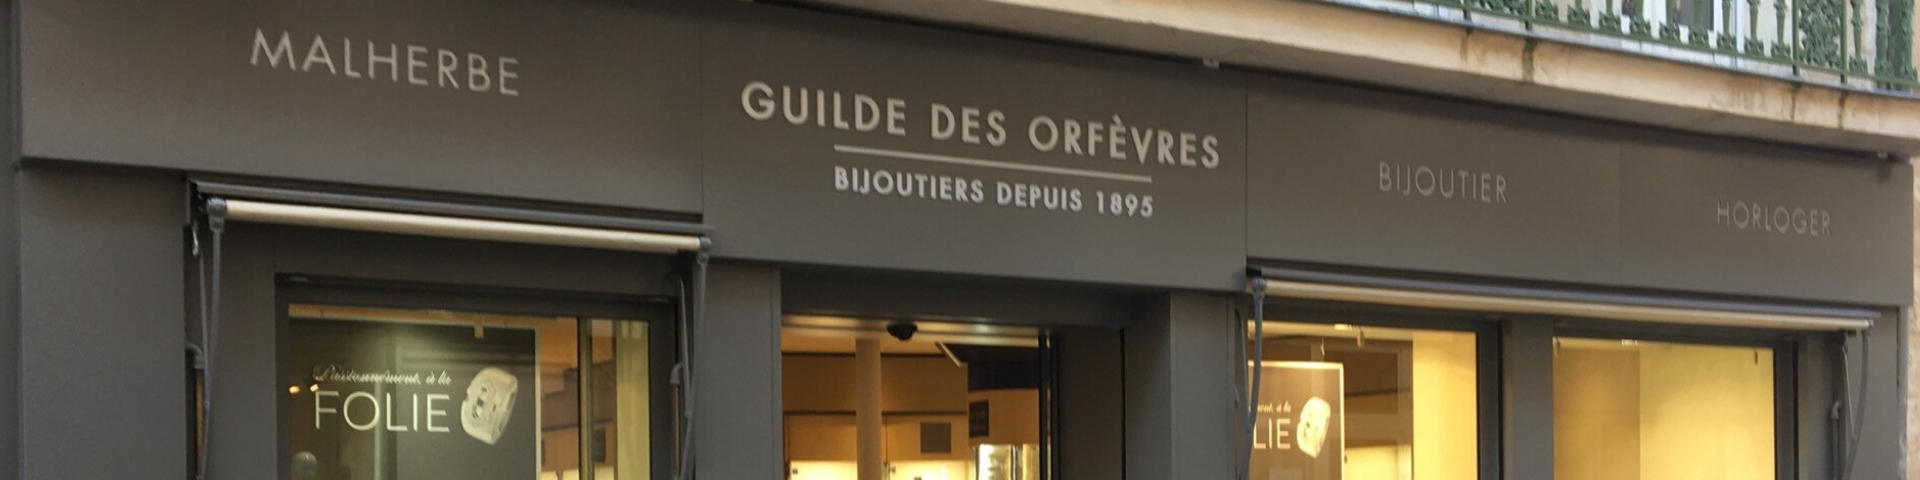 Boutique BIJOUTERIE GUILDE DES ORFEVRES - Nevers